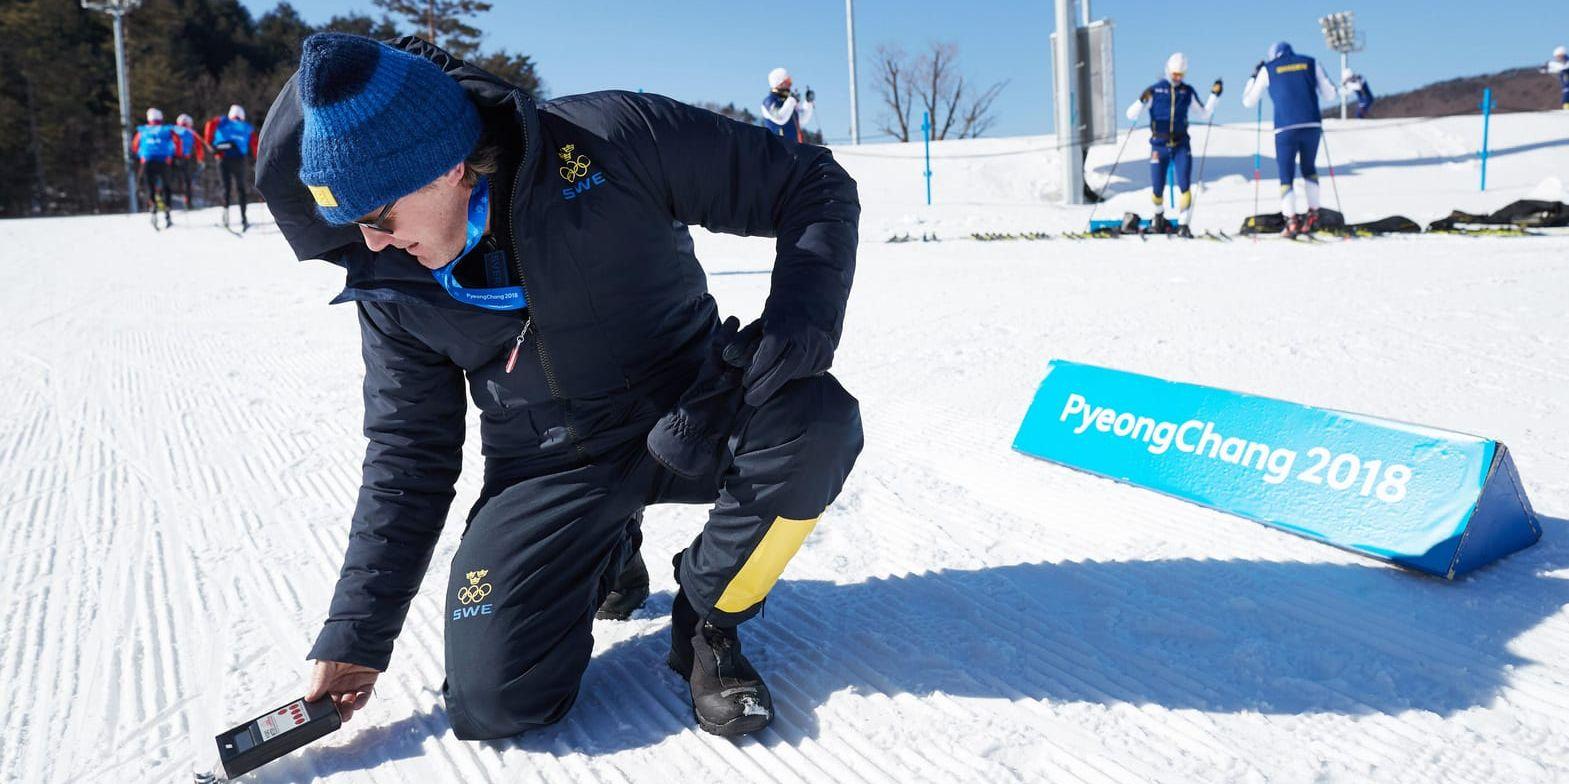 SOK:s meteorolog Tomas Mårtensson testar snötemperaturen på Alpensia skidcenter inför vinter-OS i Pyeongchang, Sydkorea. "–12 grader i dag, ungefär samma som lufttemperaturen", säger Mårtensson.